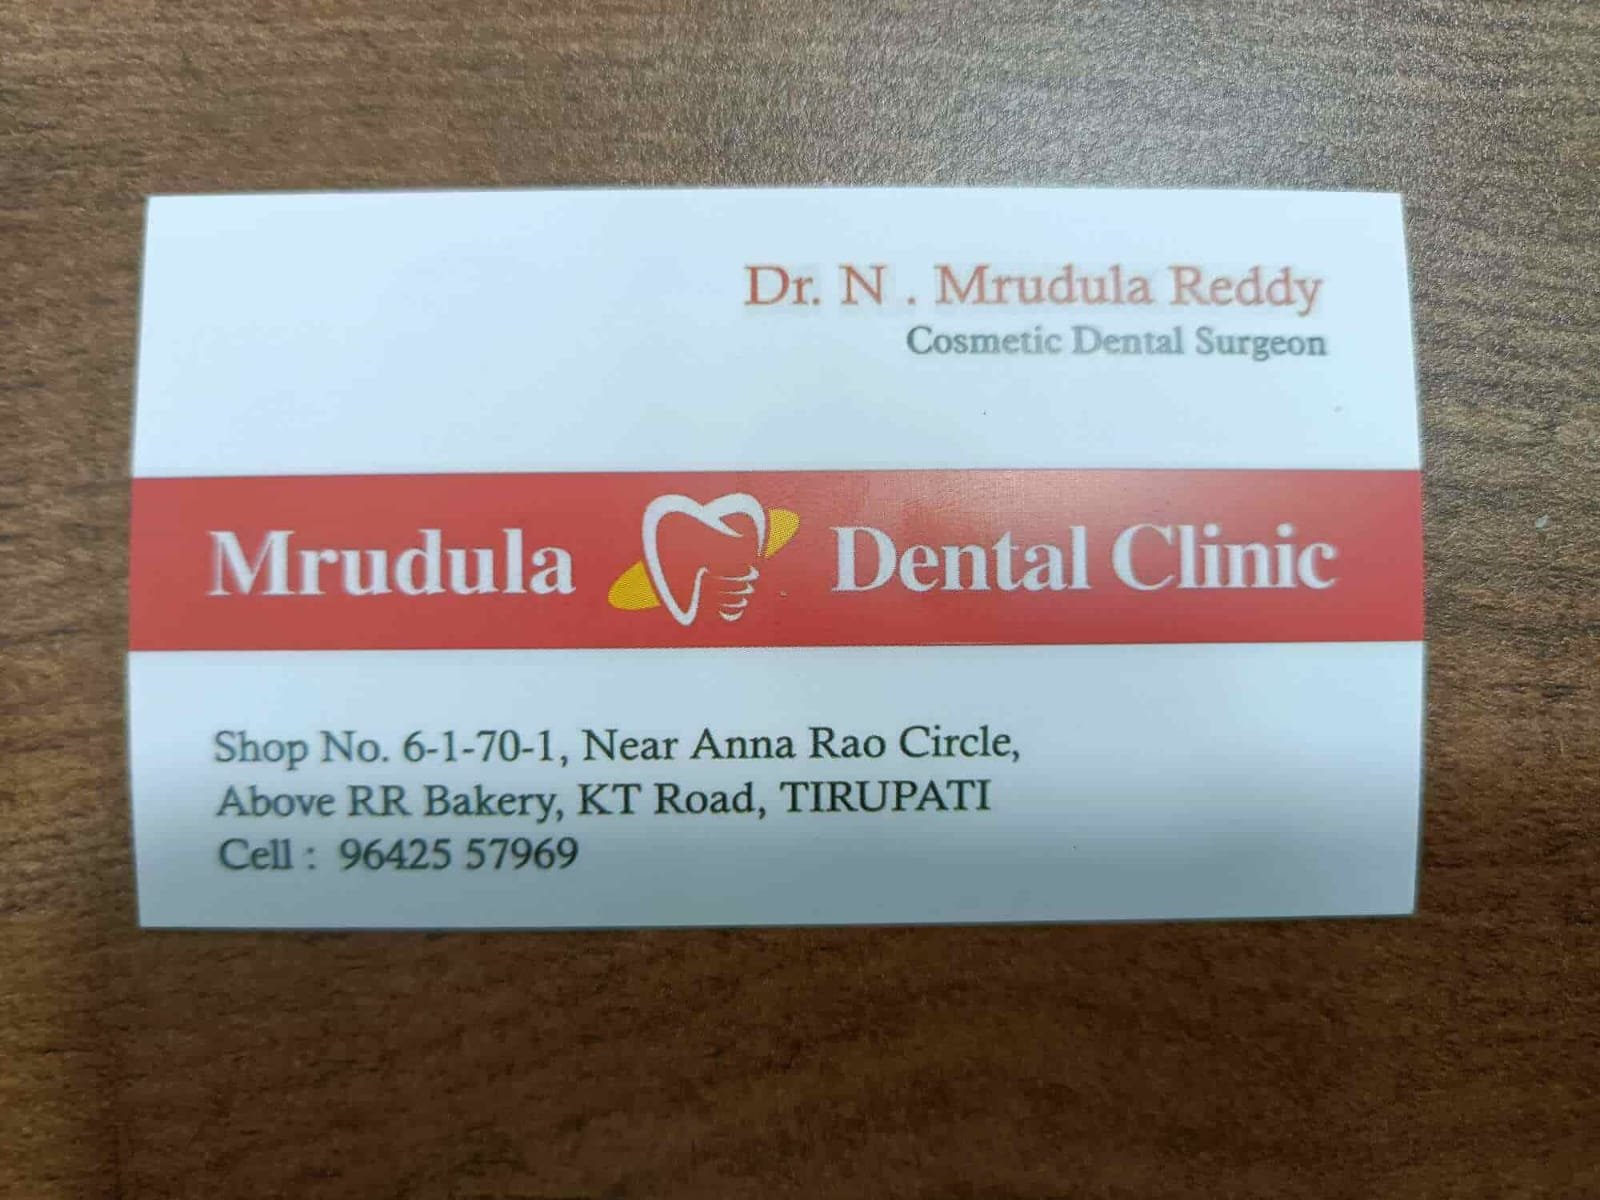 Mrudula Dental Clinic